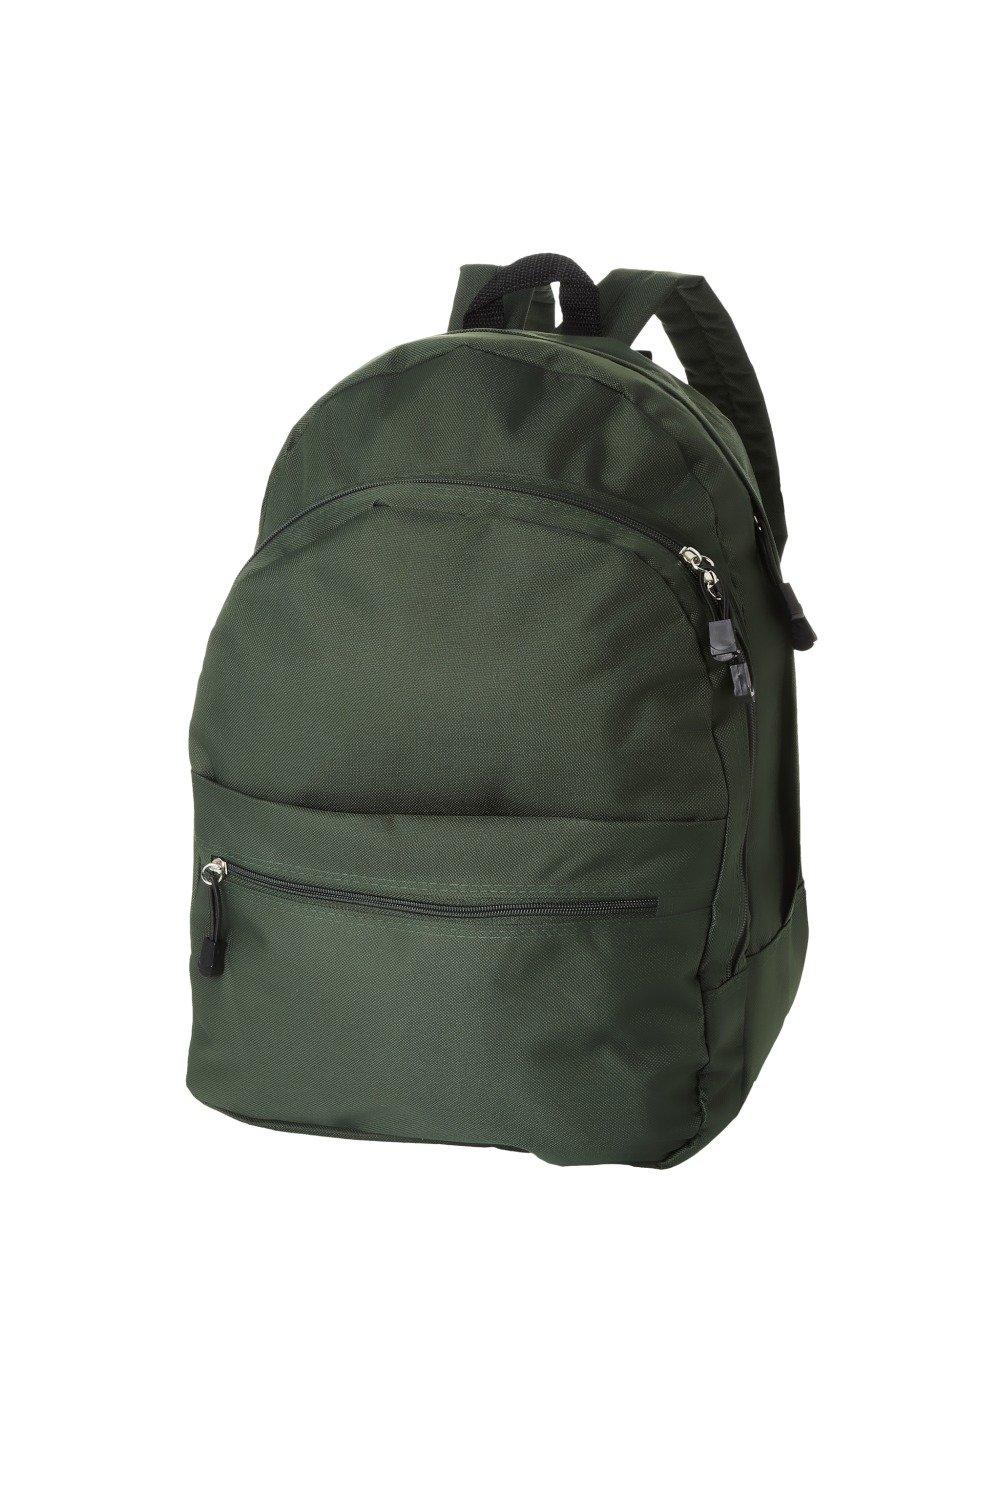 Рюкзак Trend (2 шт.) Bullet, зеленый рюкзак с карманом единорог 1 шт